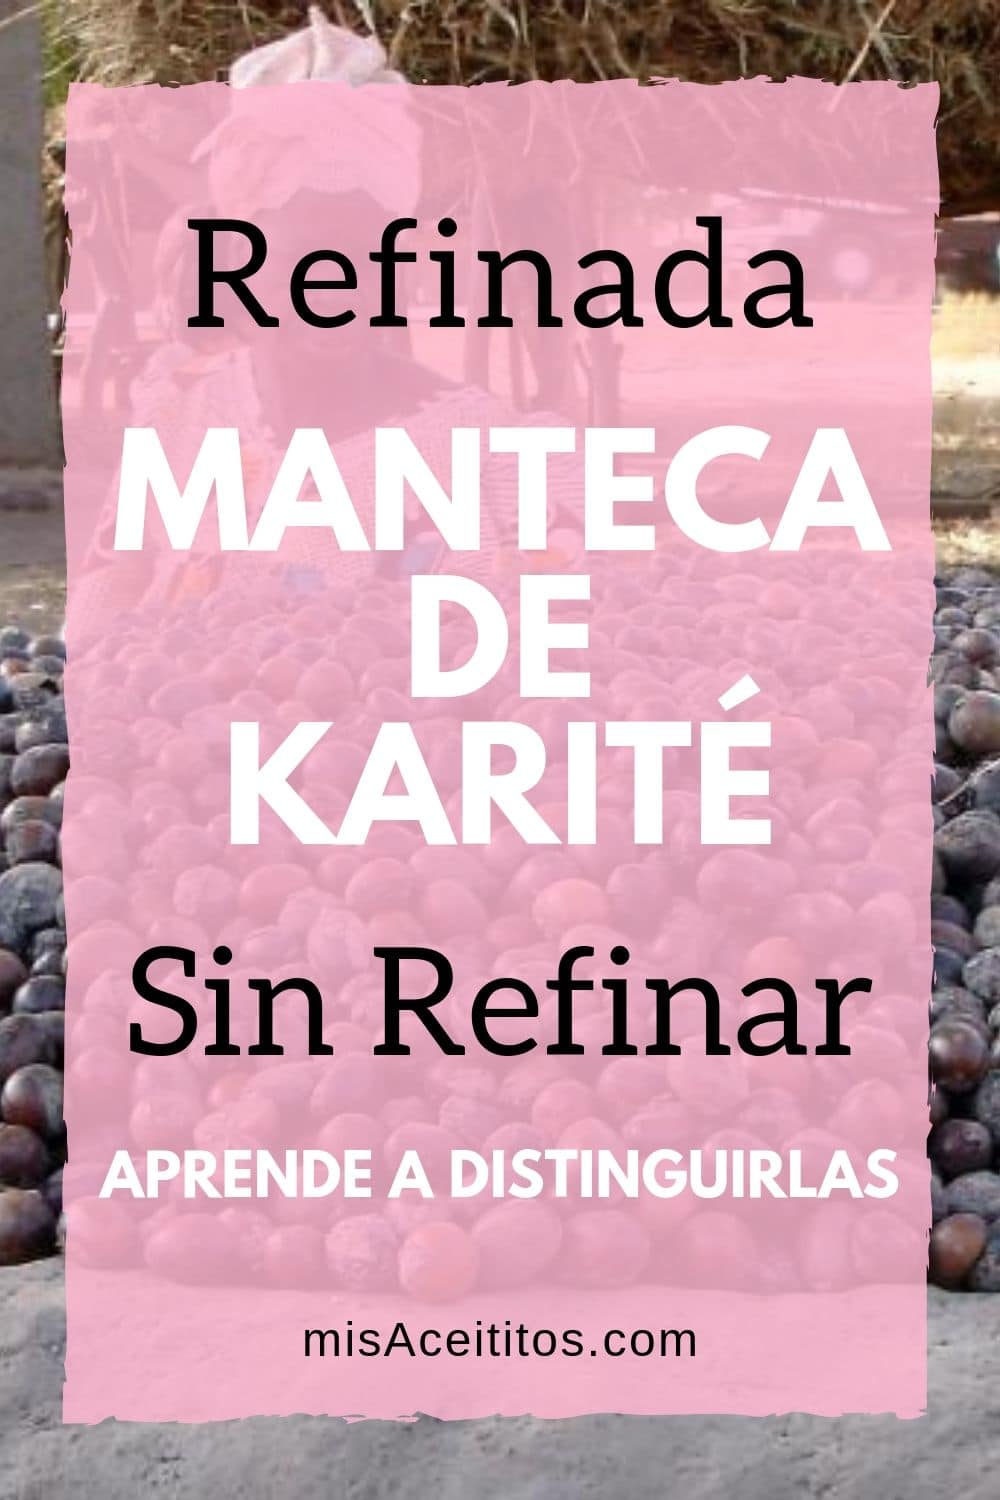 La confusión acerca de la Manteca de Karité refinada y sin refinar se debe a los diversos tipos comerciales que utilizan las marcas: pura, refinada, sin refinar, premium. 